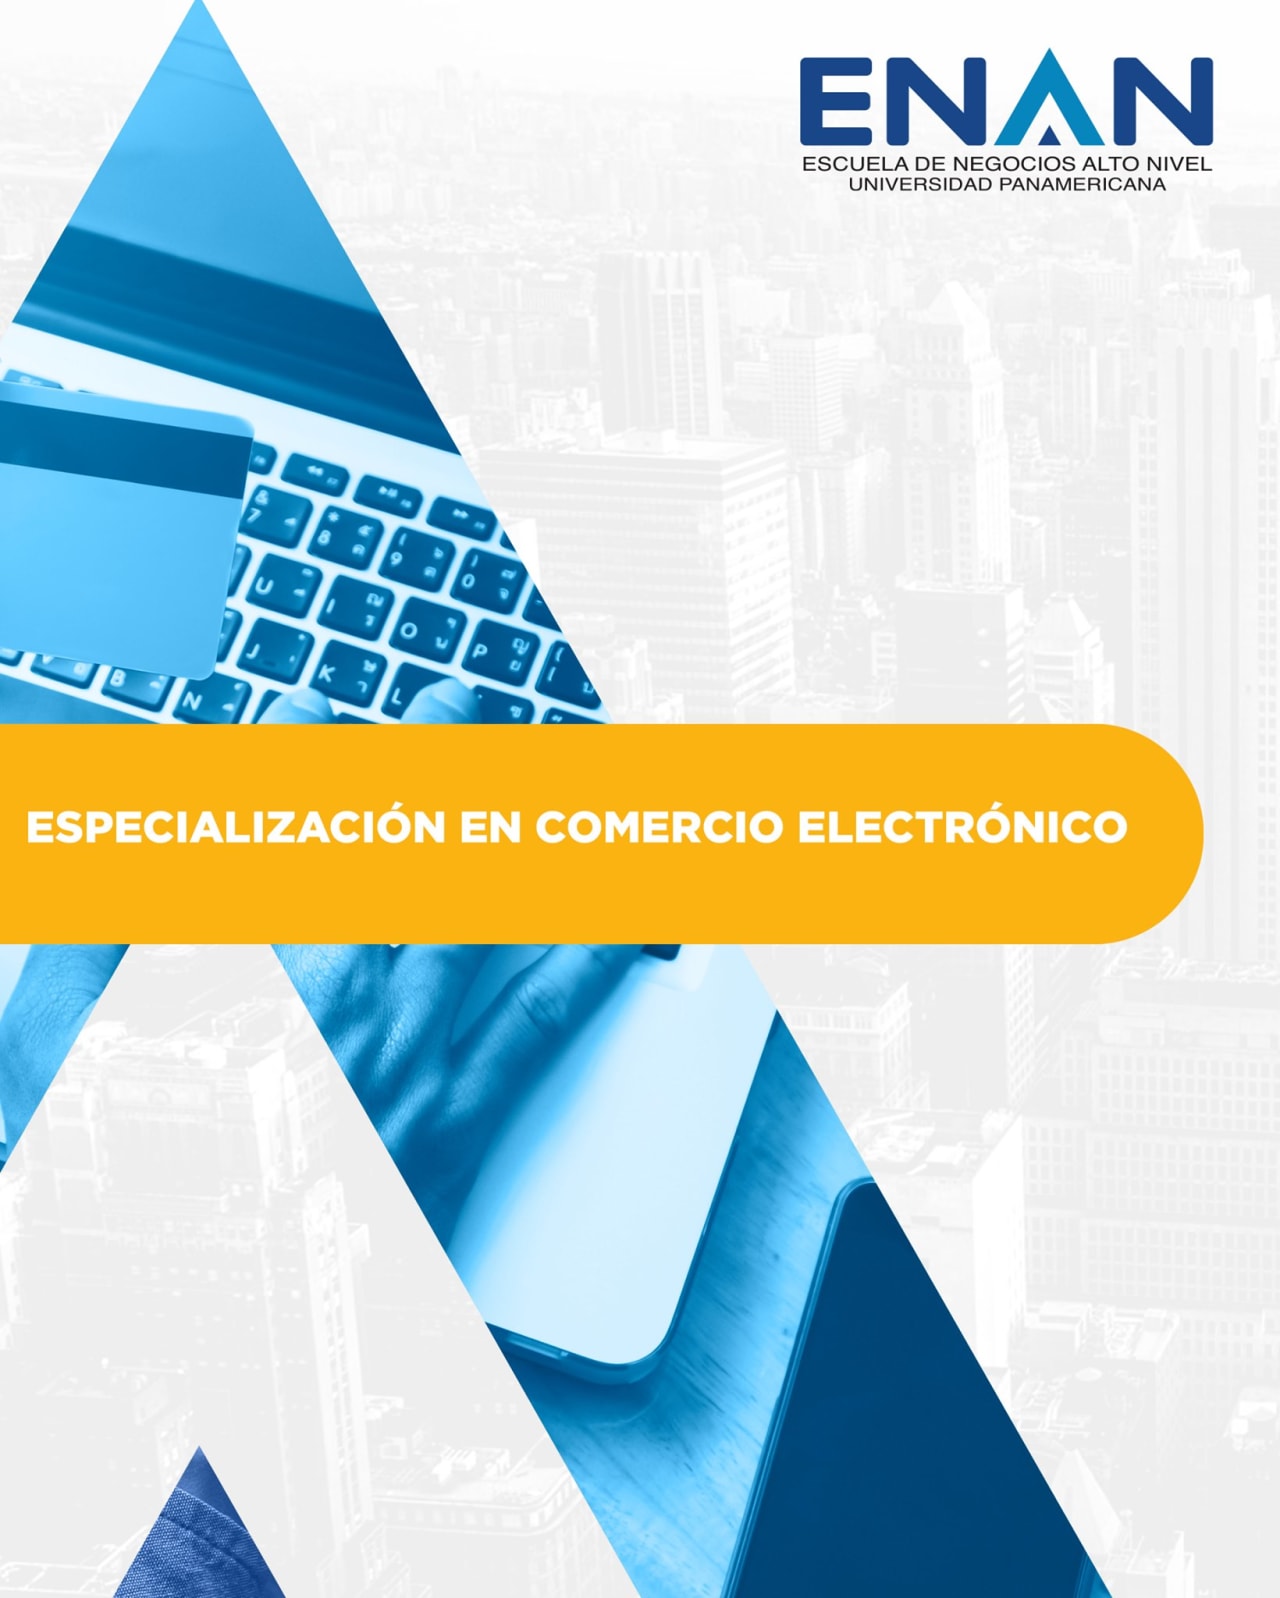 Escuela de Negocios Alto Nivel - Universidad Panamericana de Guatemala इलेक्ट्रॉनिक कॉमर्स विशेषज्ञता